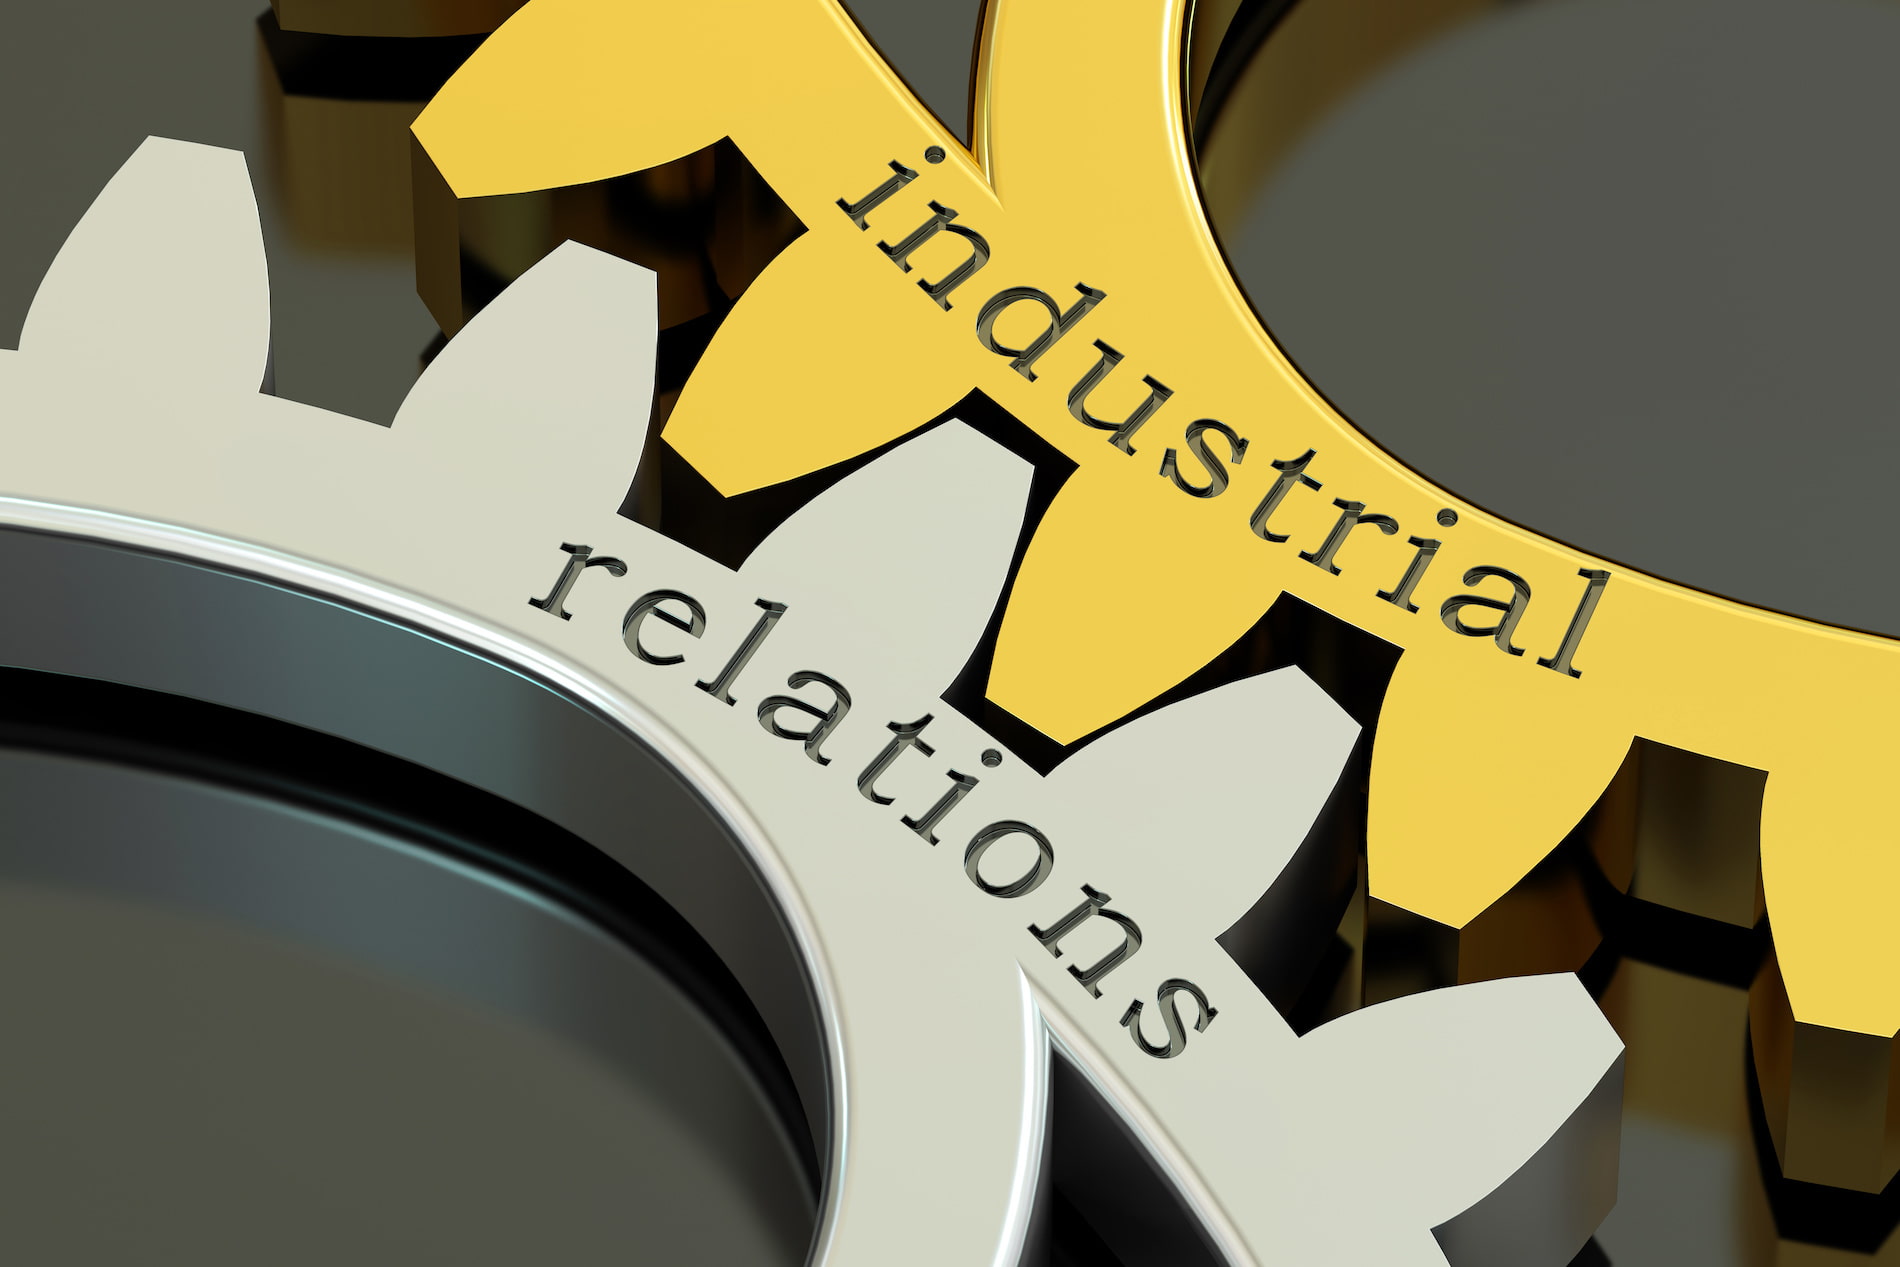 Industrial relations Code